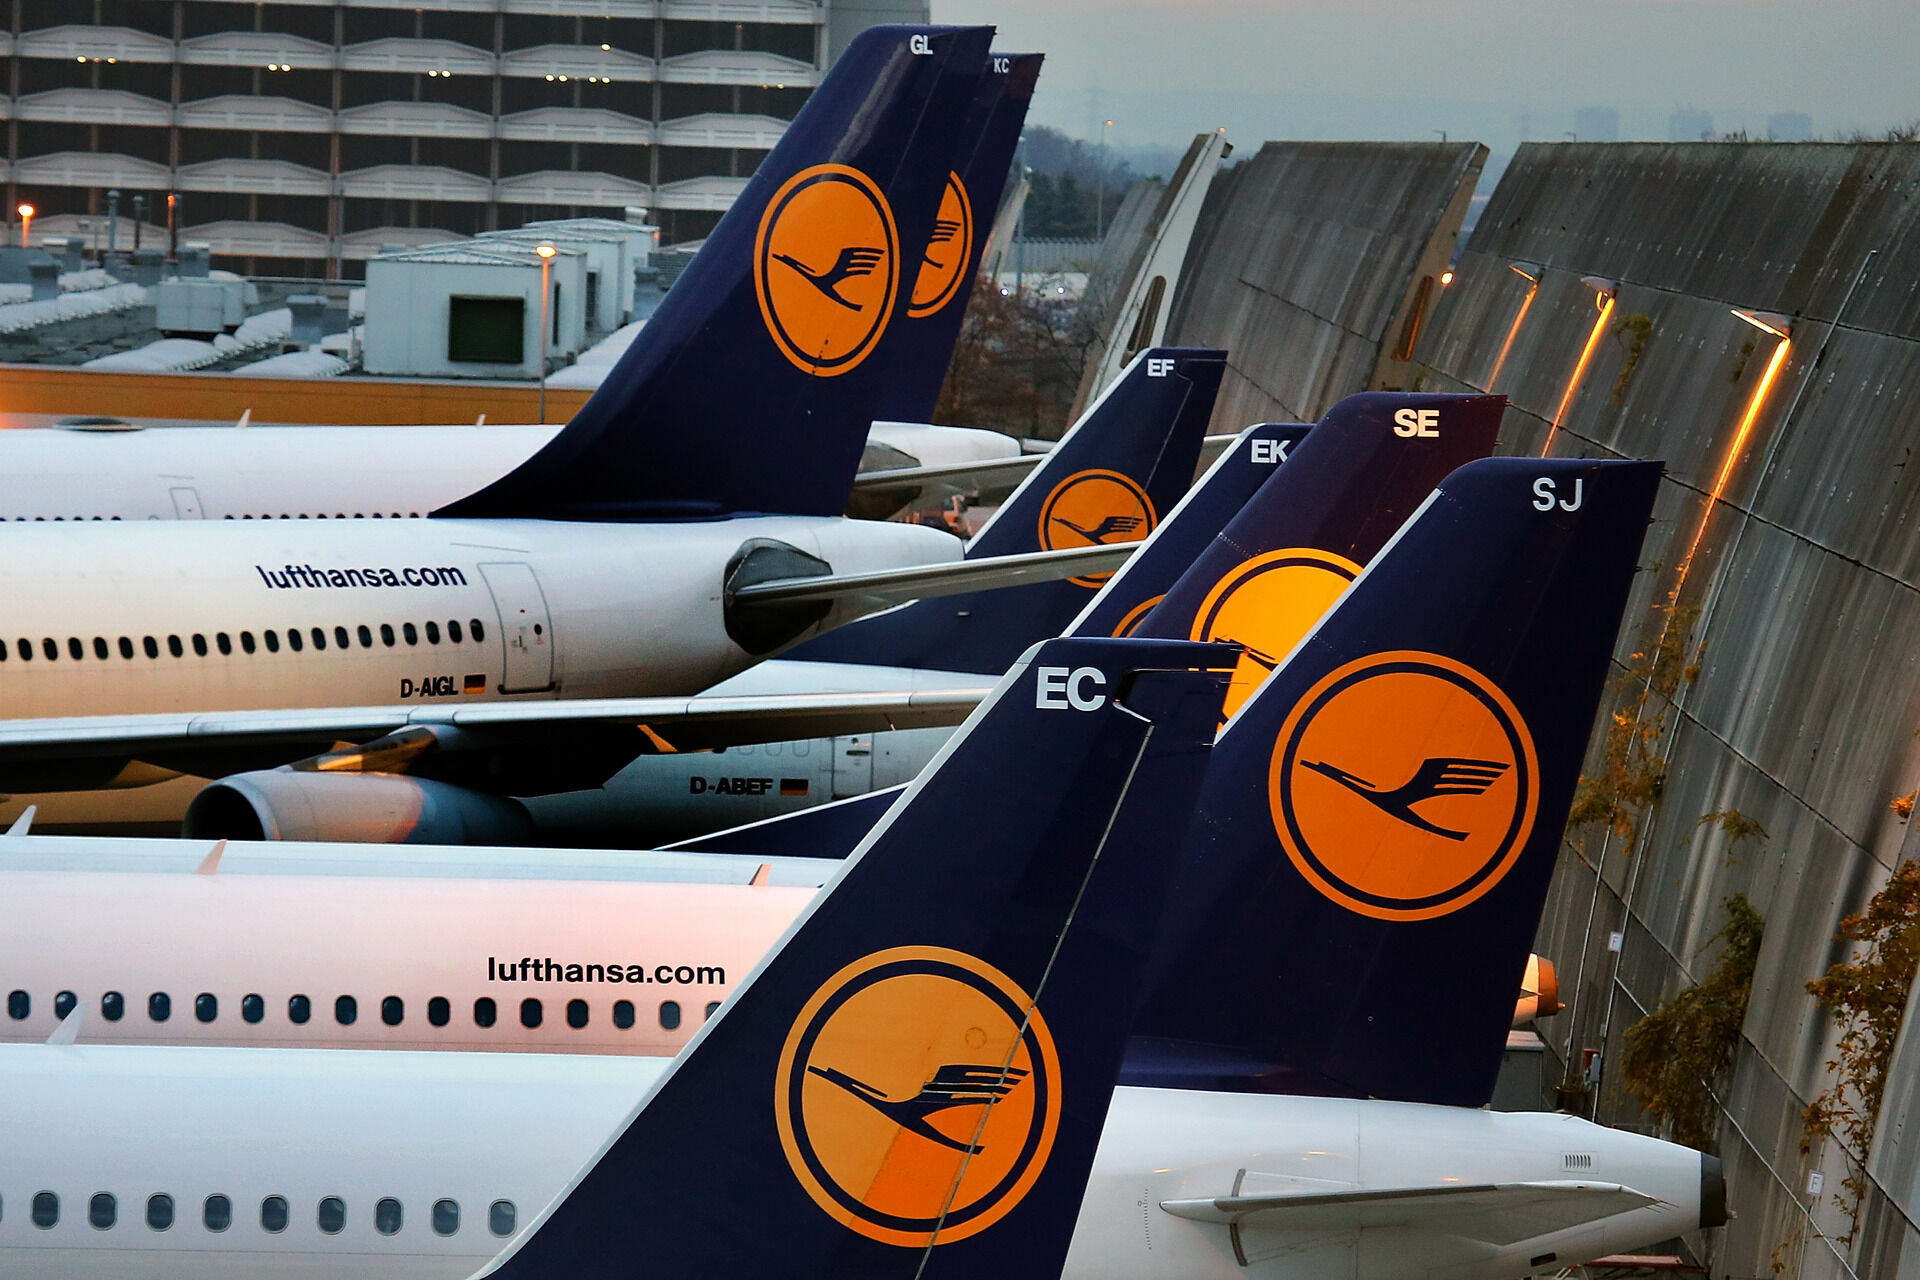 Авиакомпании Lufthansa и Swiss Air приостановили полеты в Киев с 21 февраля